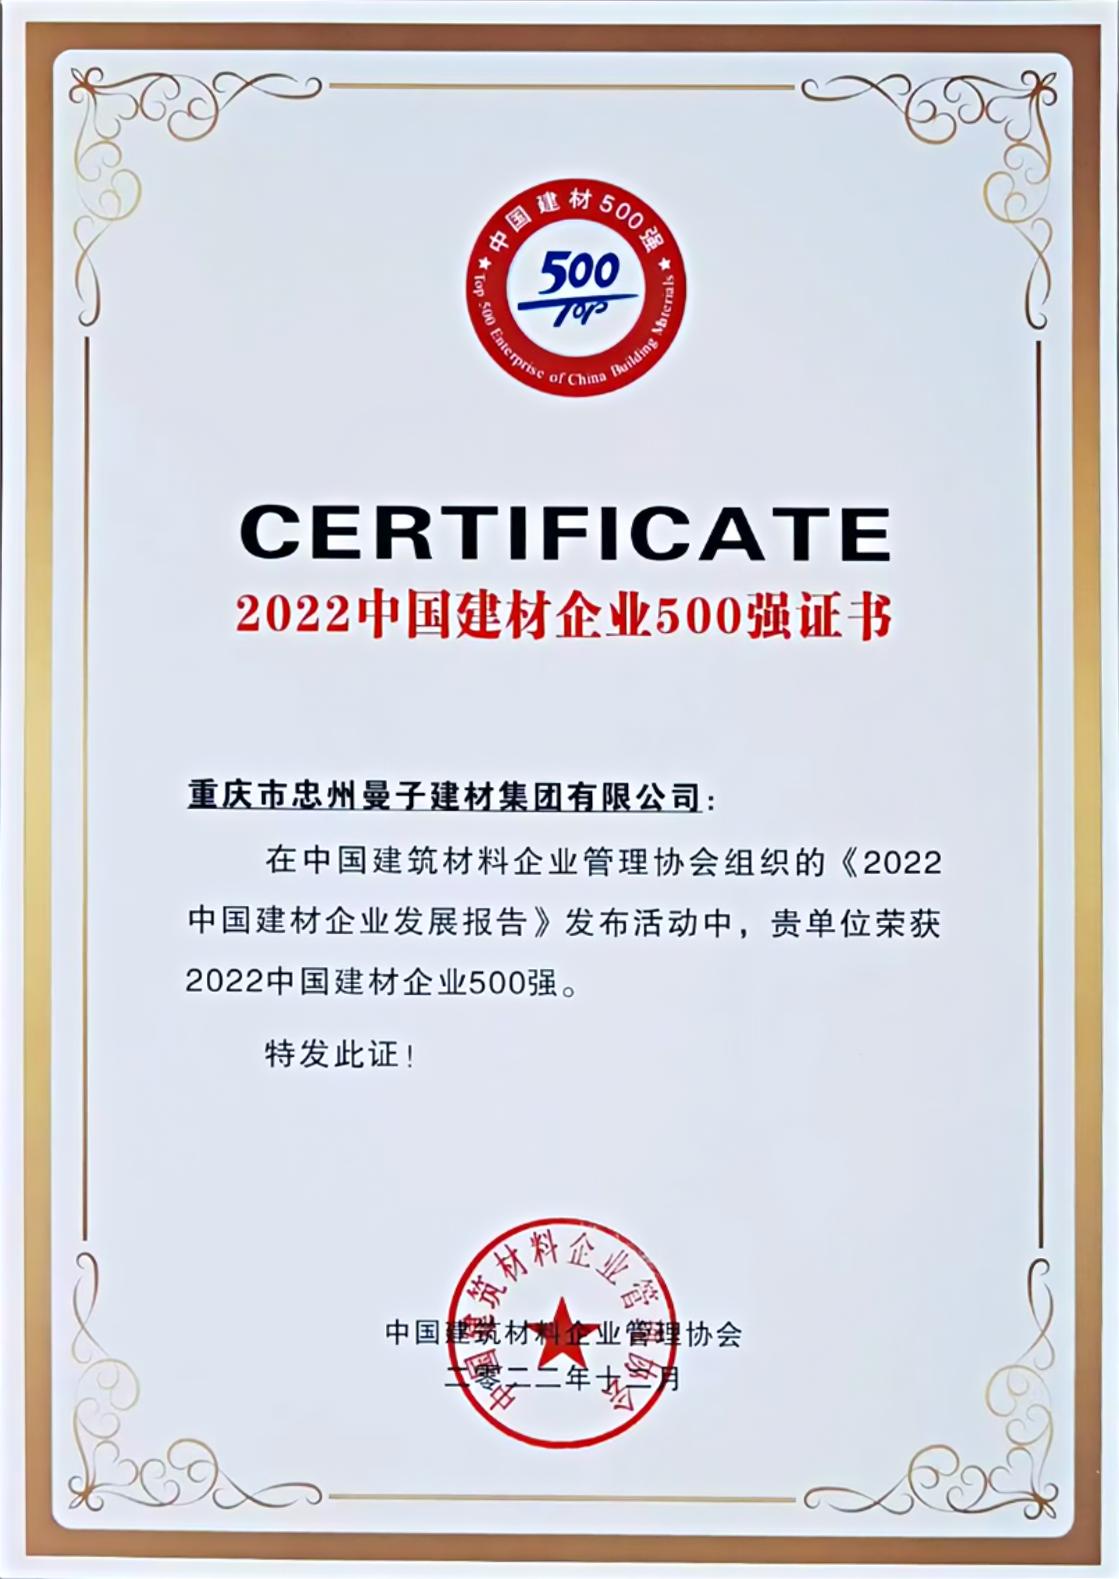 公司榮獲2022年度中國建材企業500強